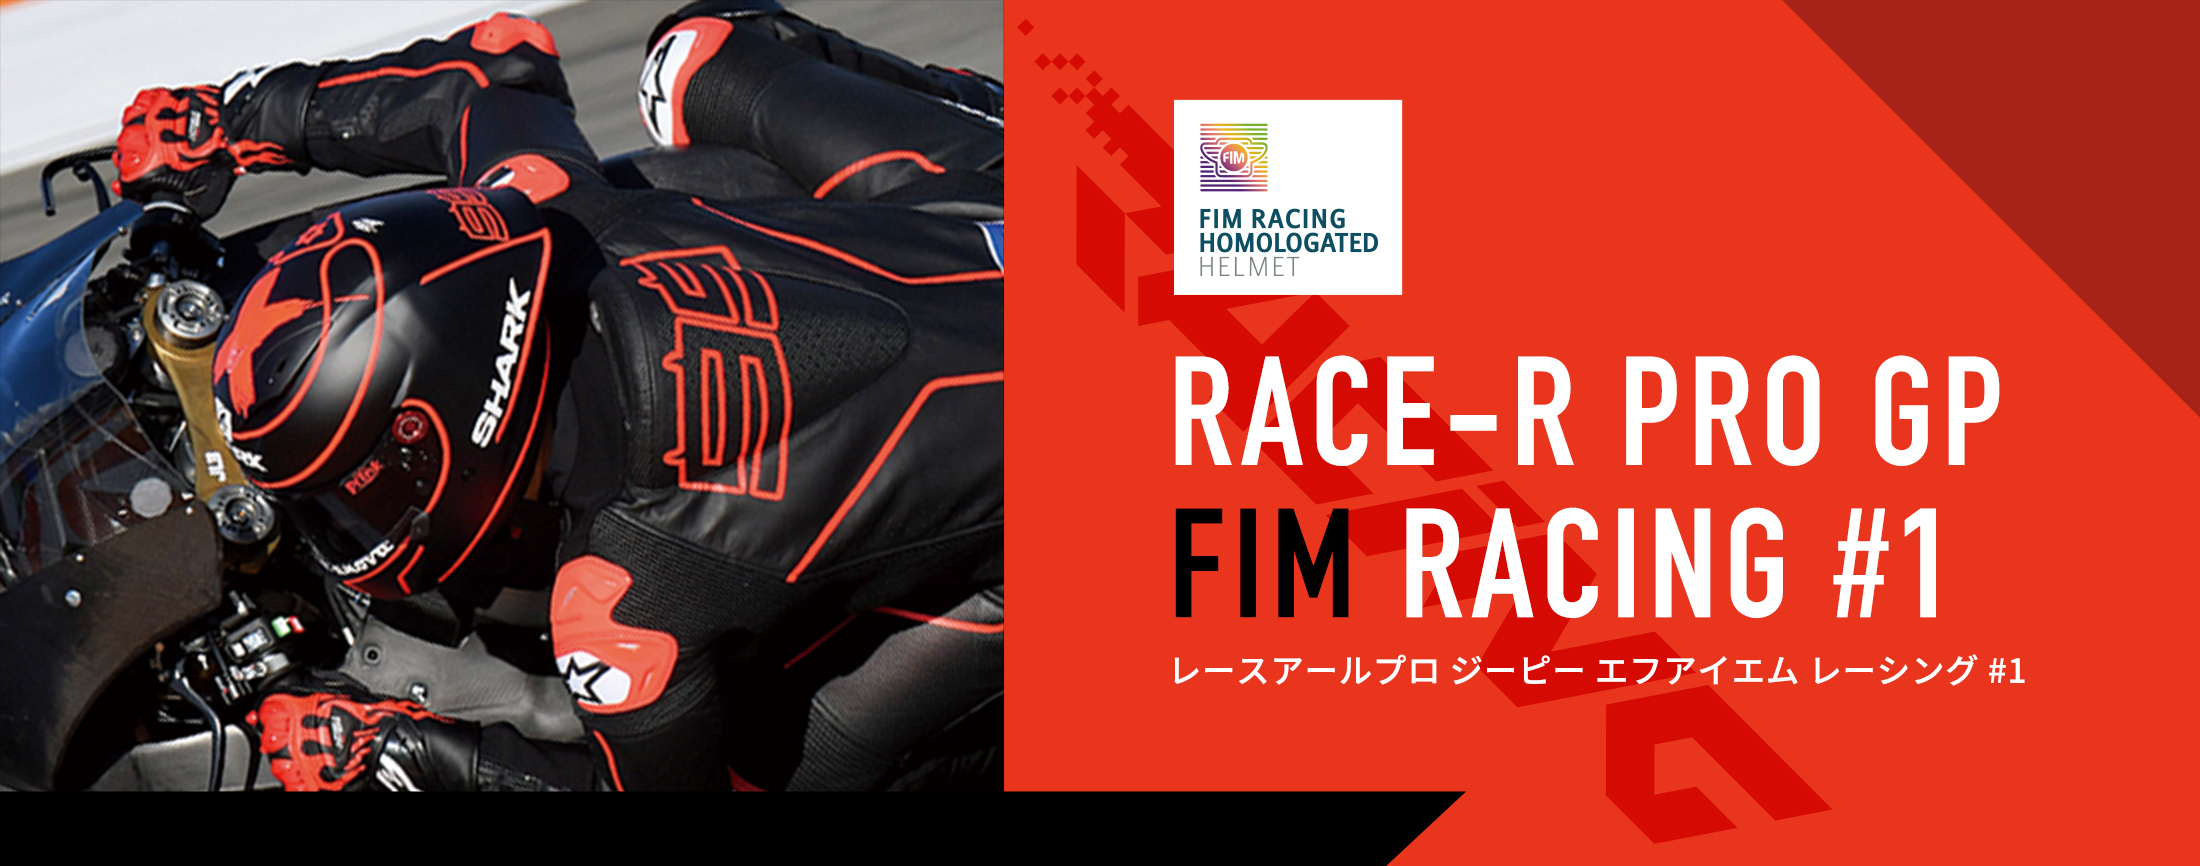 RACE-R PRO GP FIM RACING #1 レースアールプロ ジーピー エフアイエム レーシング #1